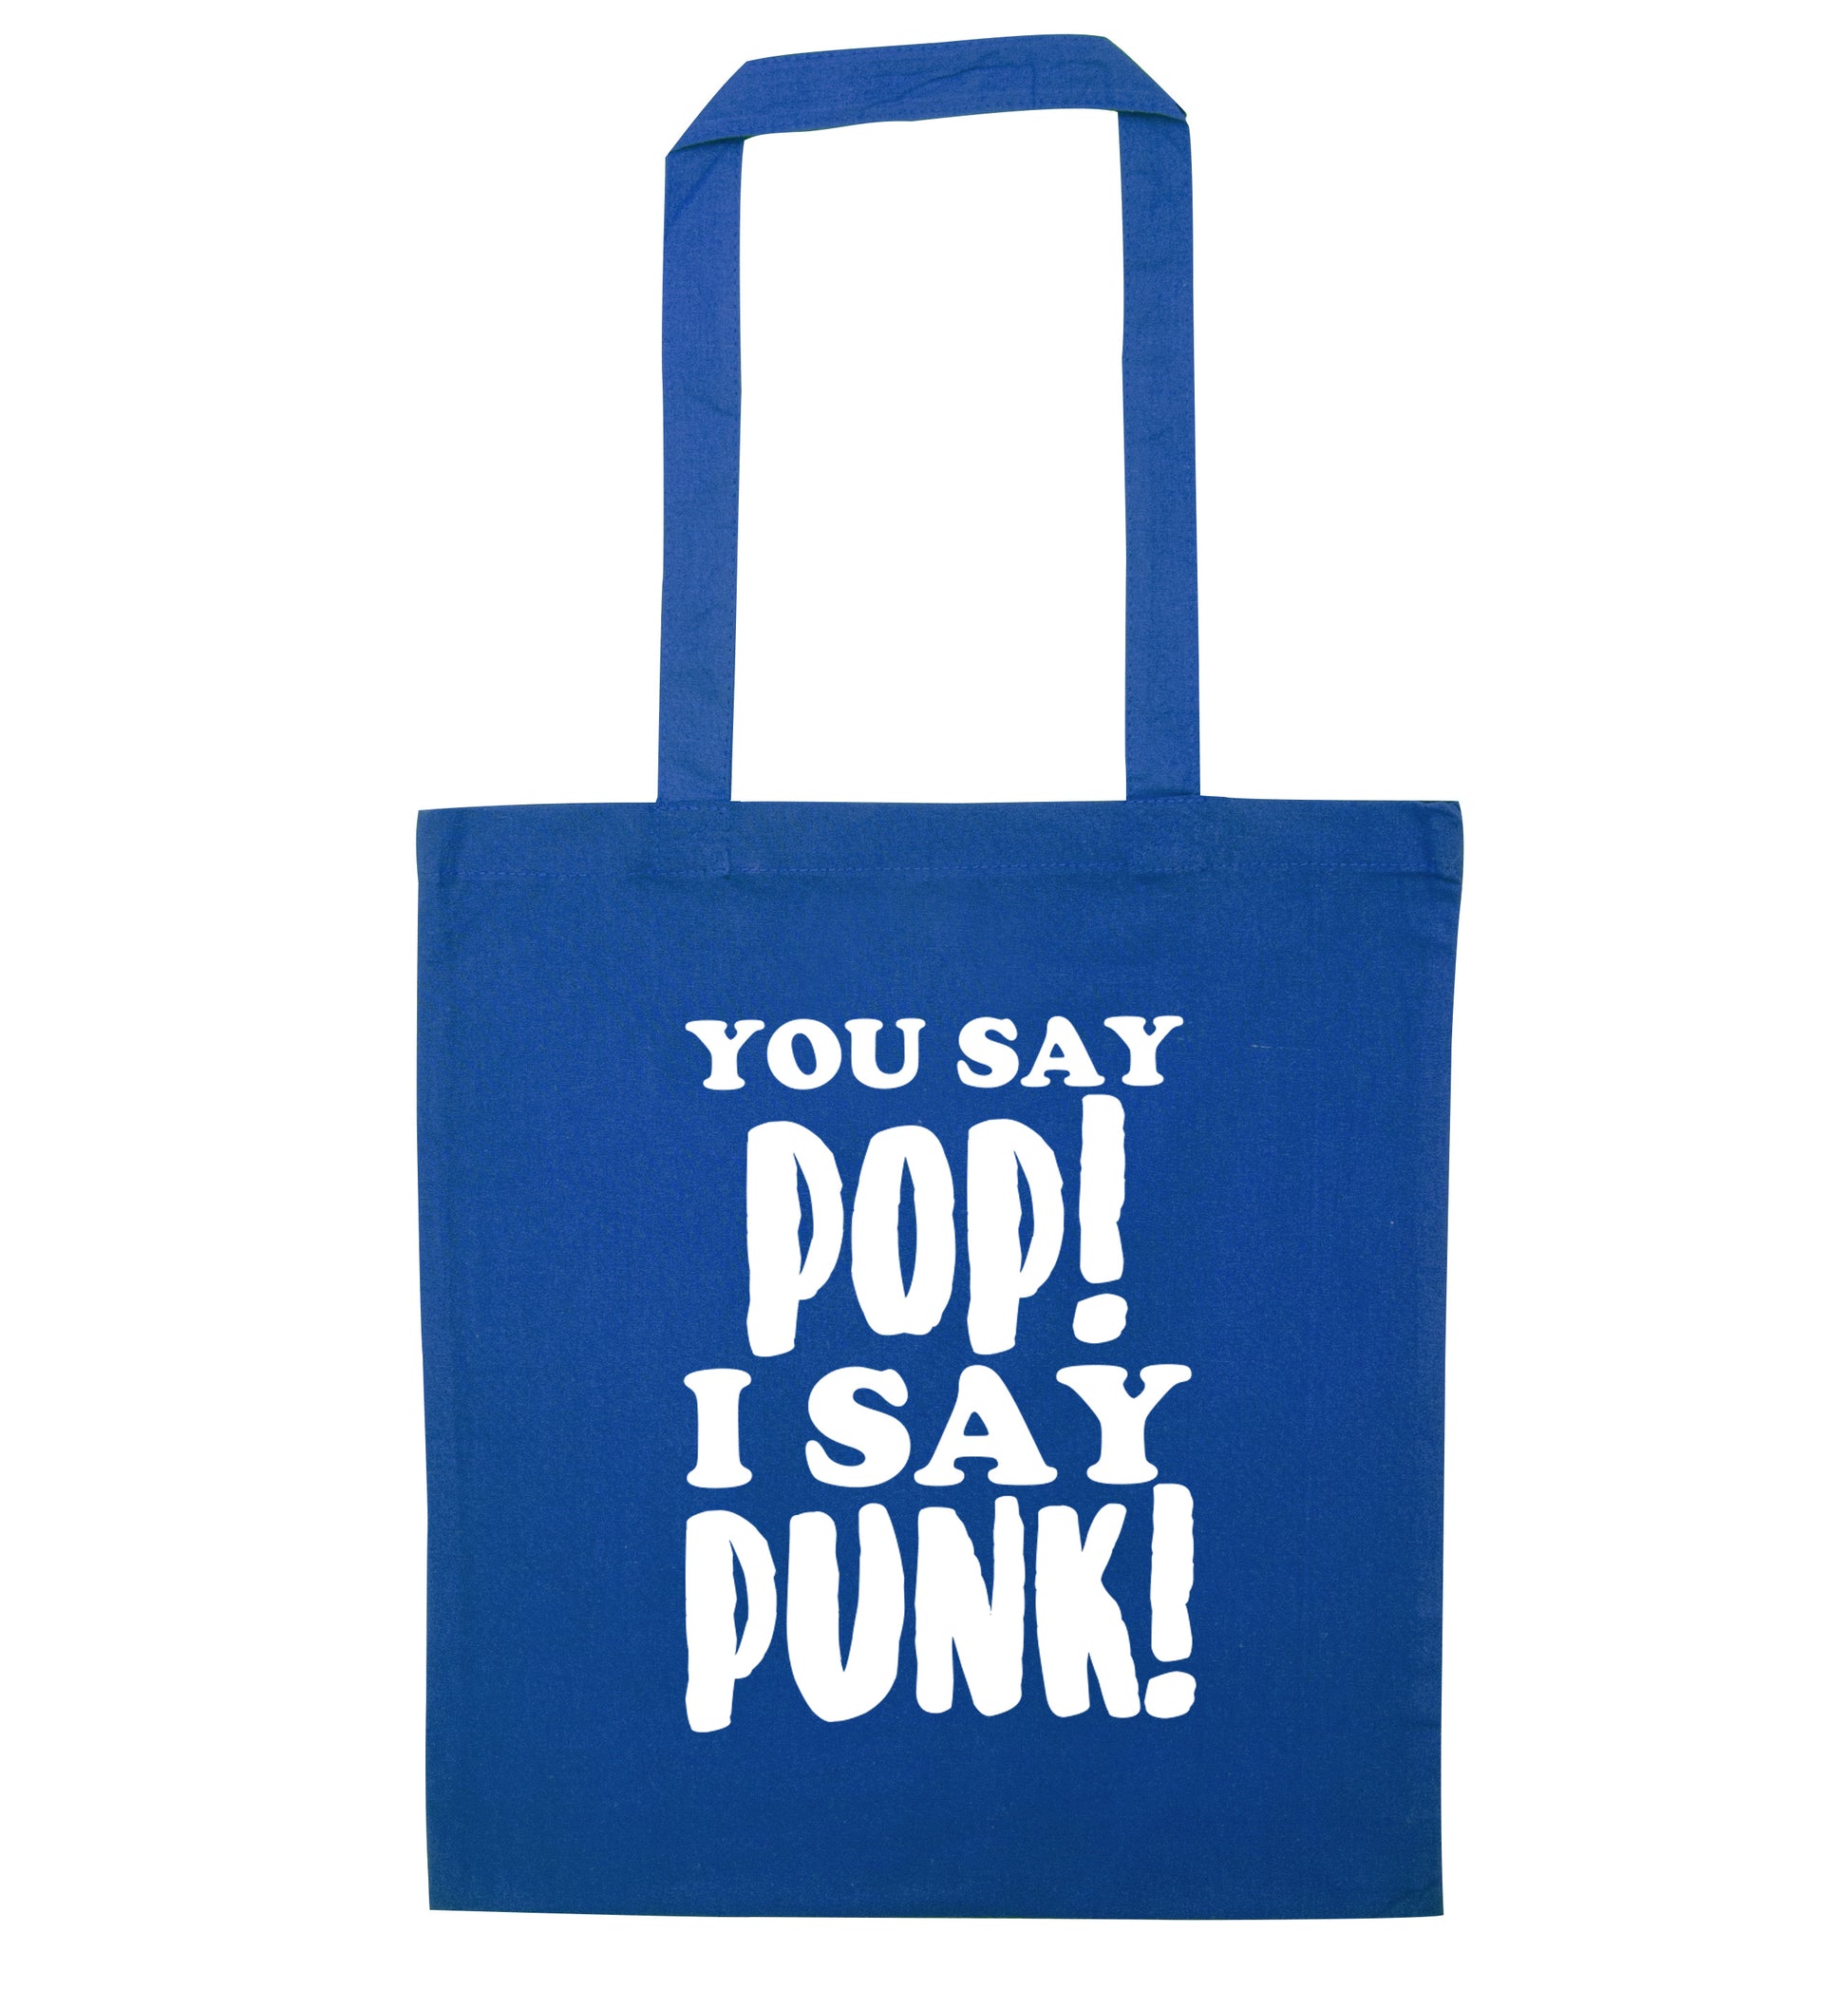 You say pop I say punk! blue tote bag